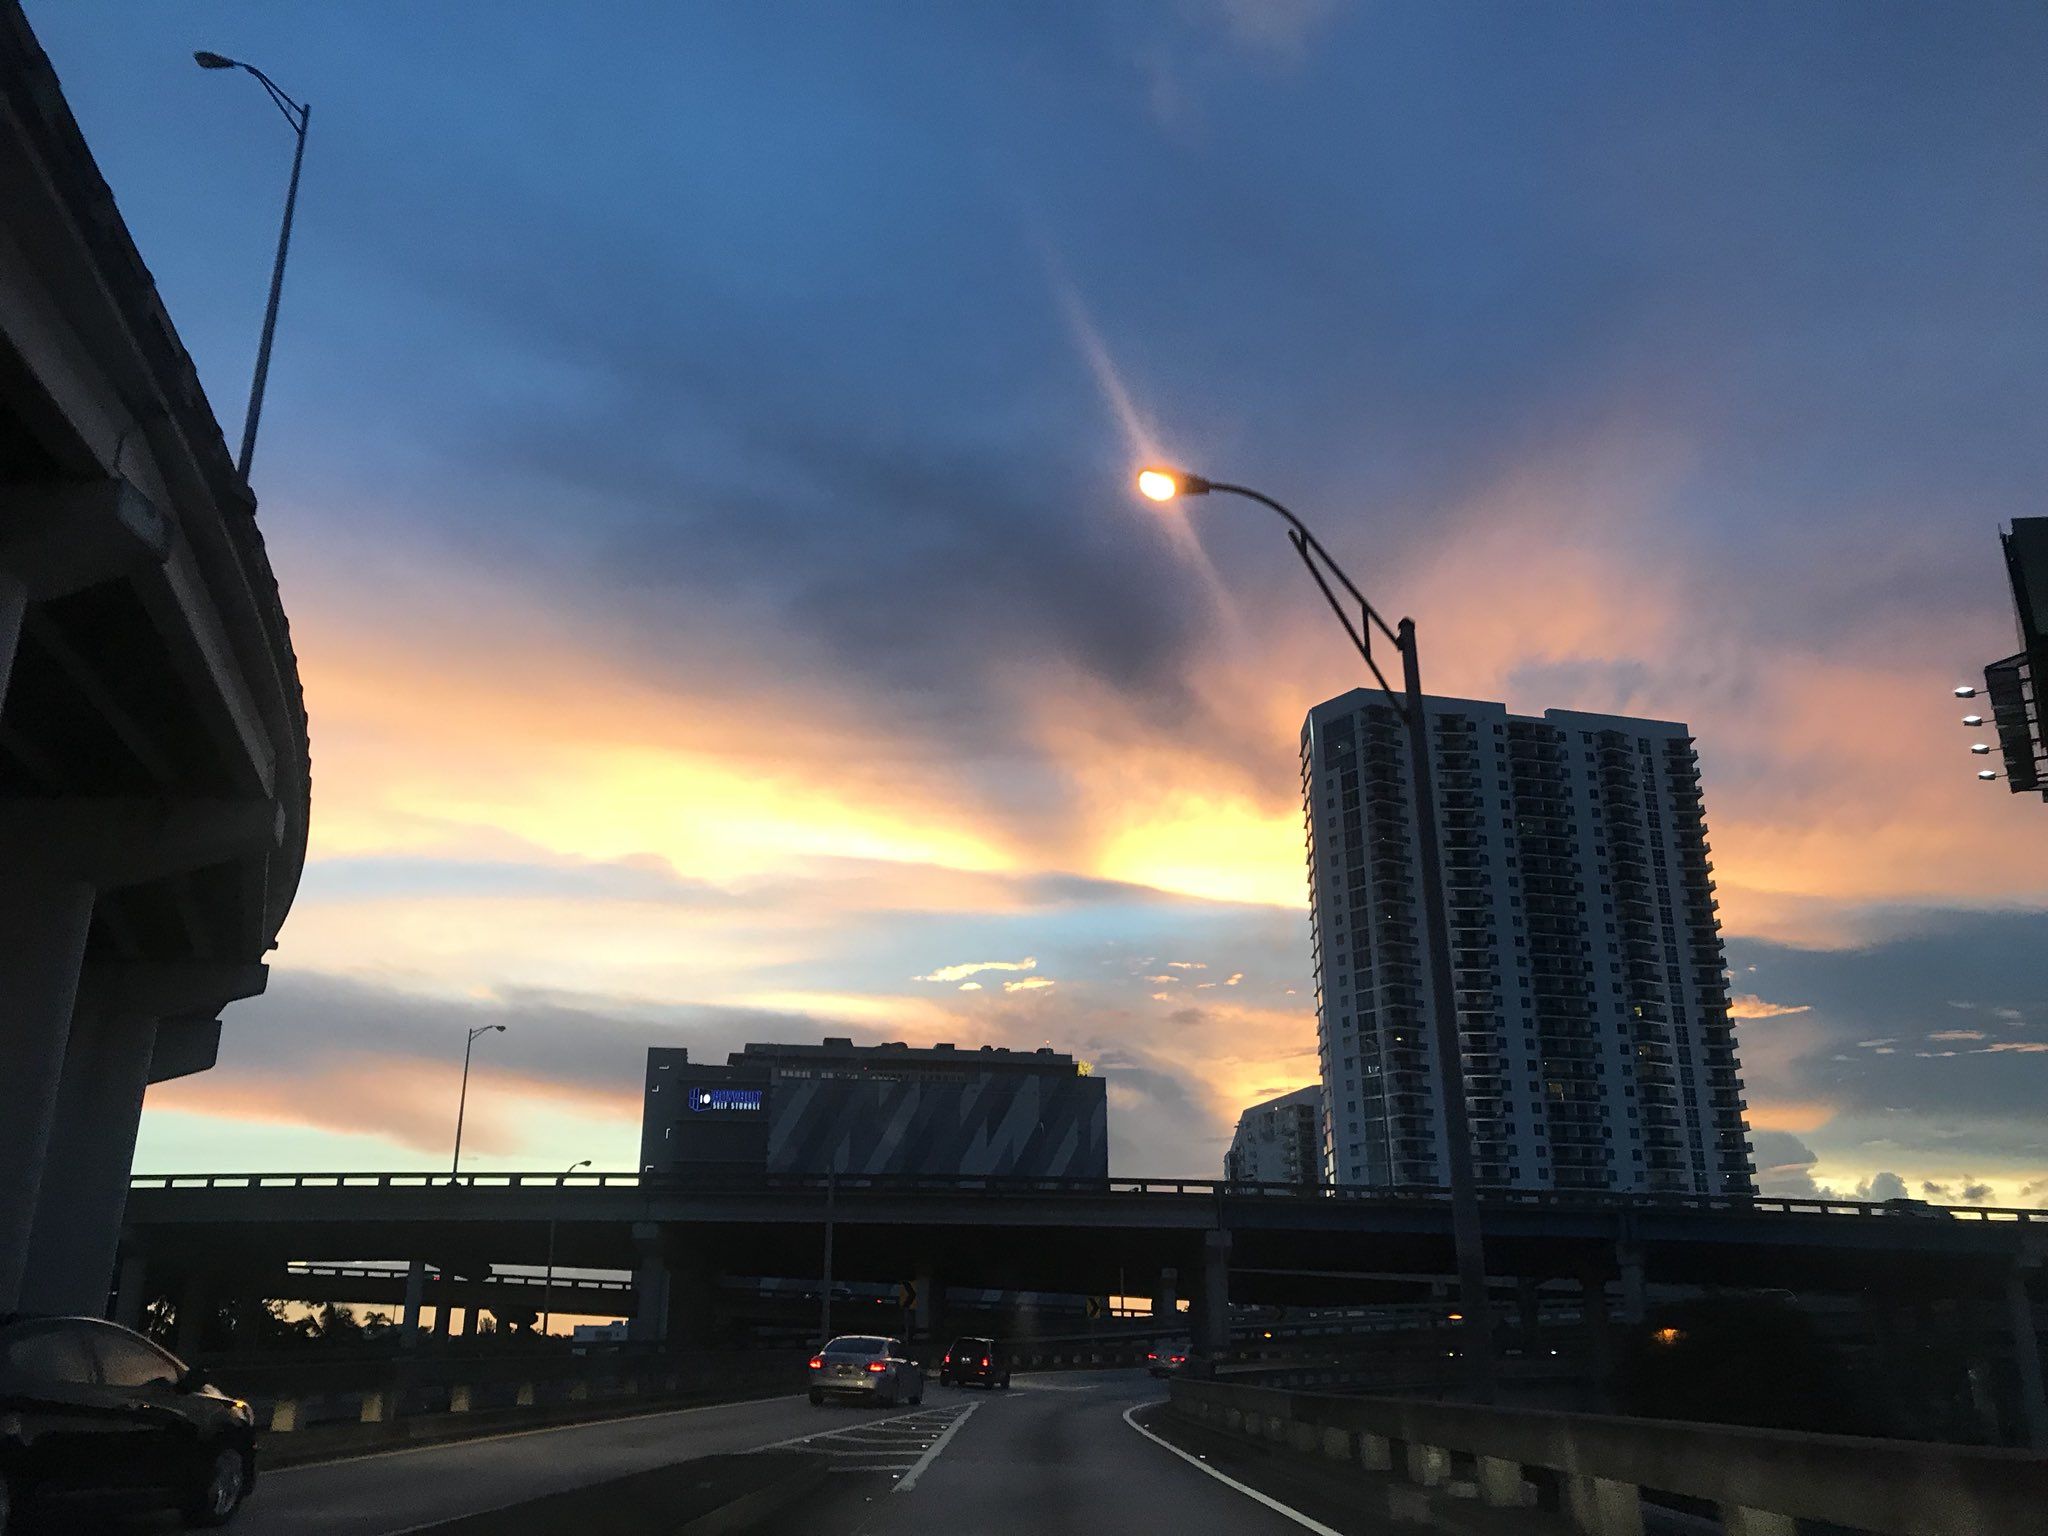 City of Miami's sunset. Take this time to prepare # Miami